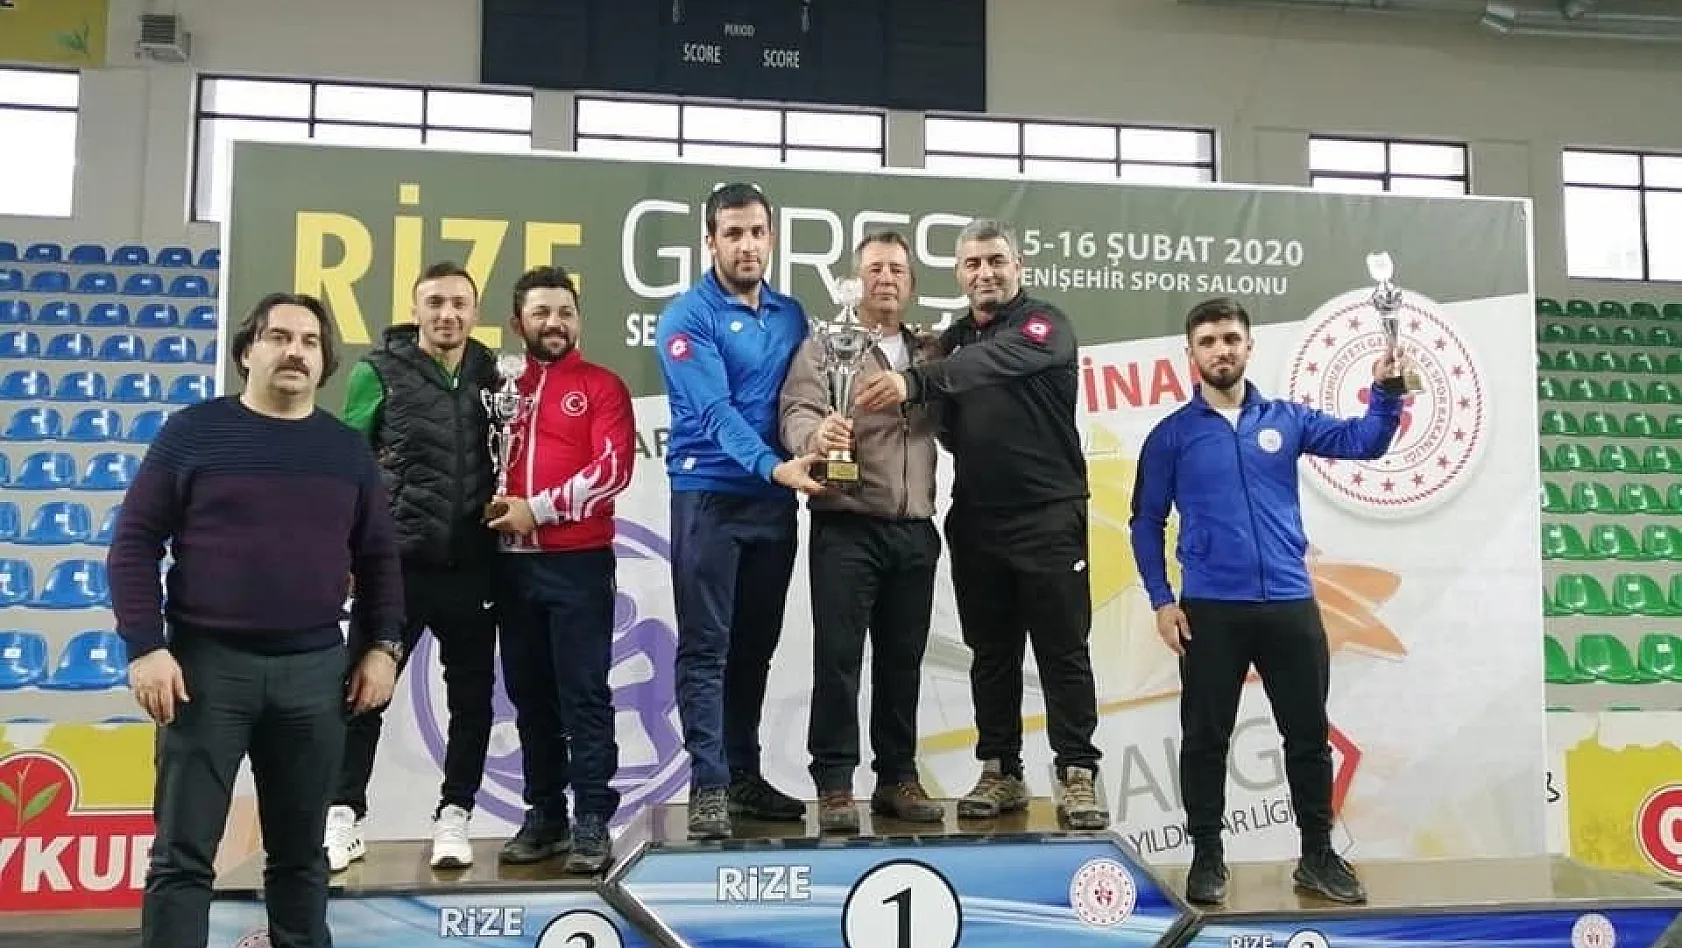 Kayseri GEM, Analig Güreşte Türkiye Şampiyonu
